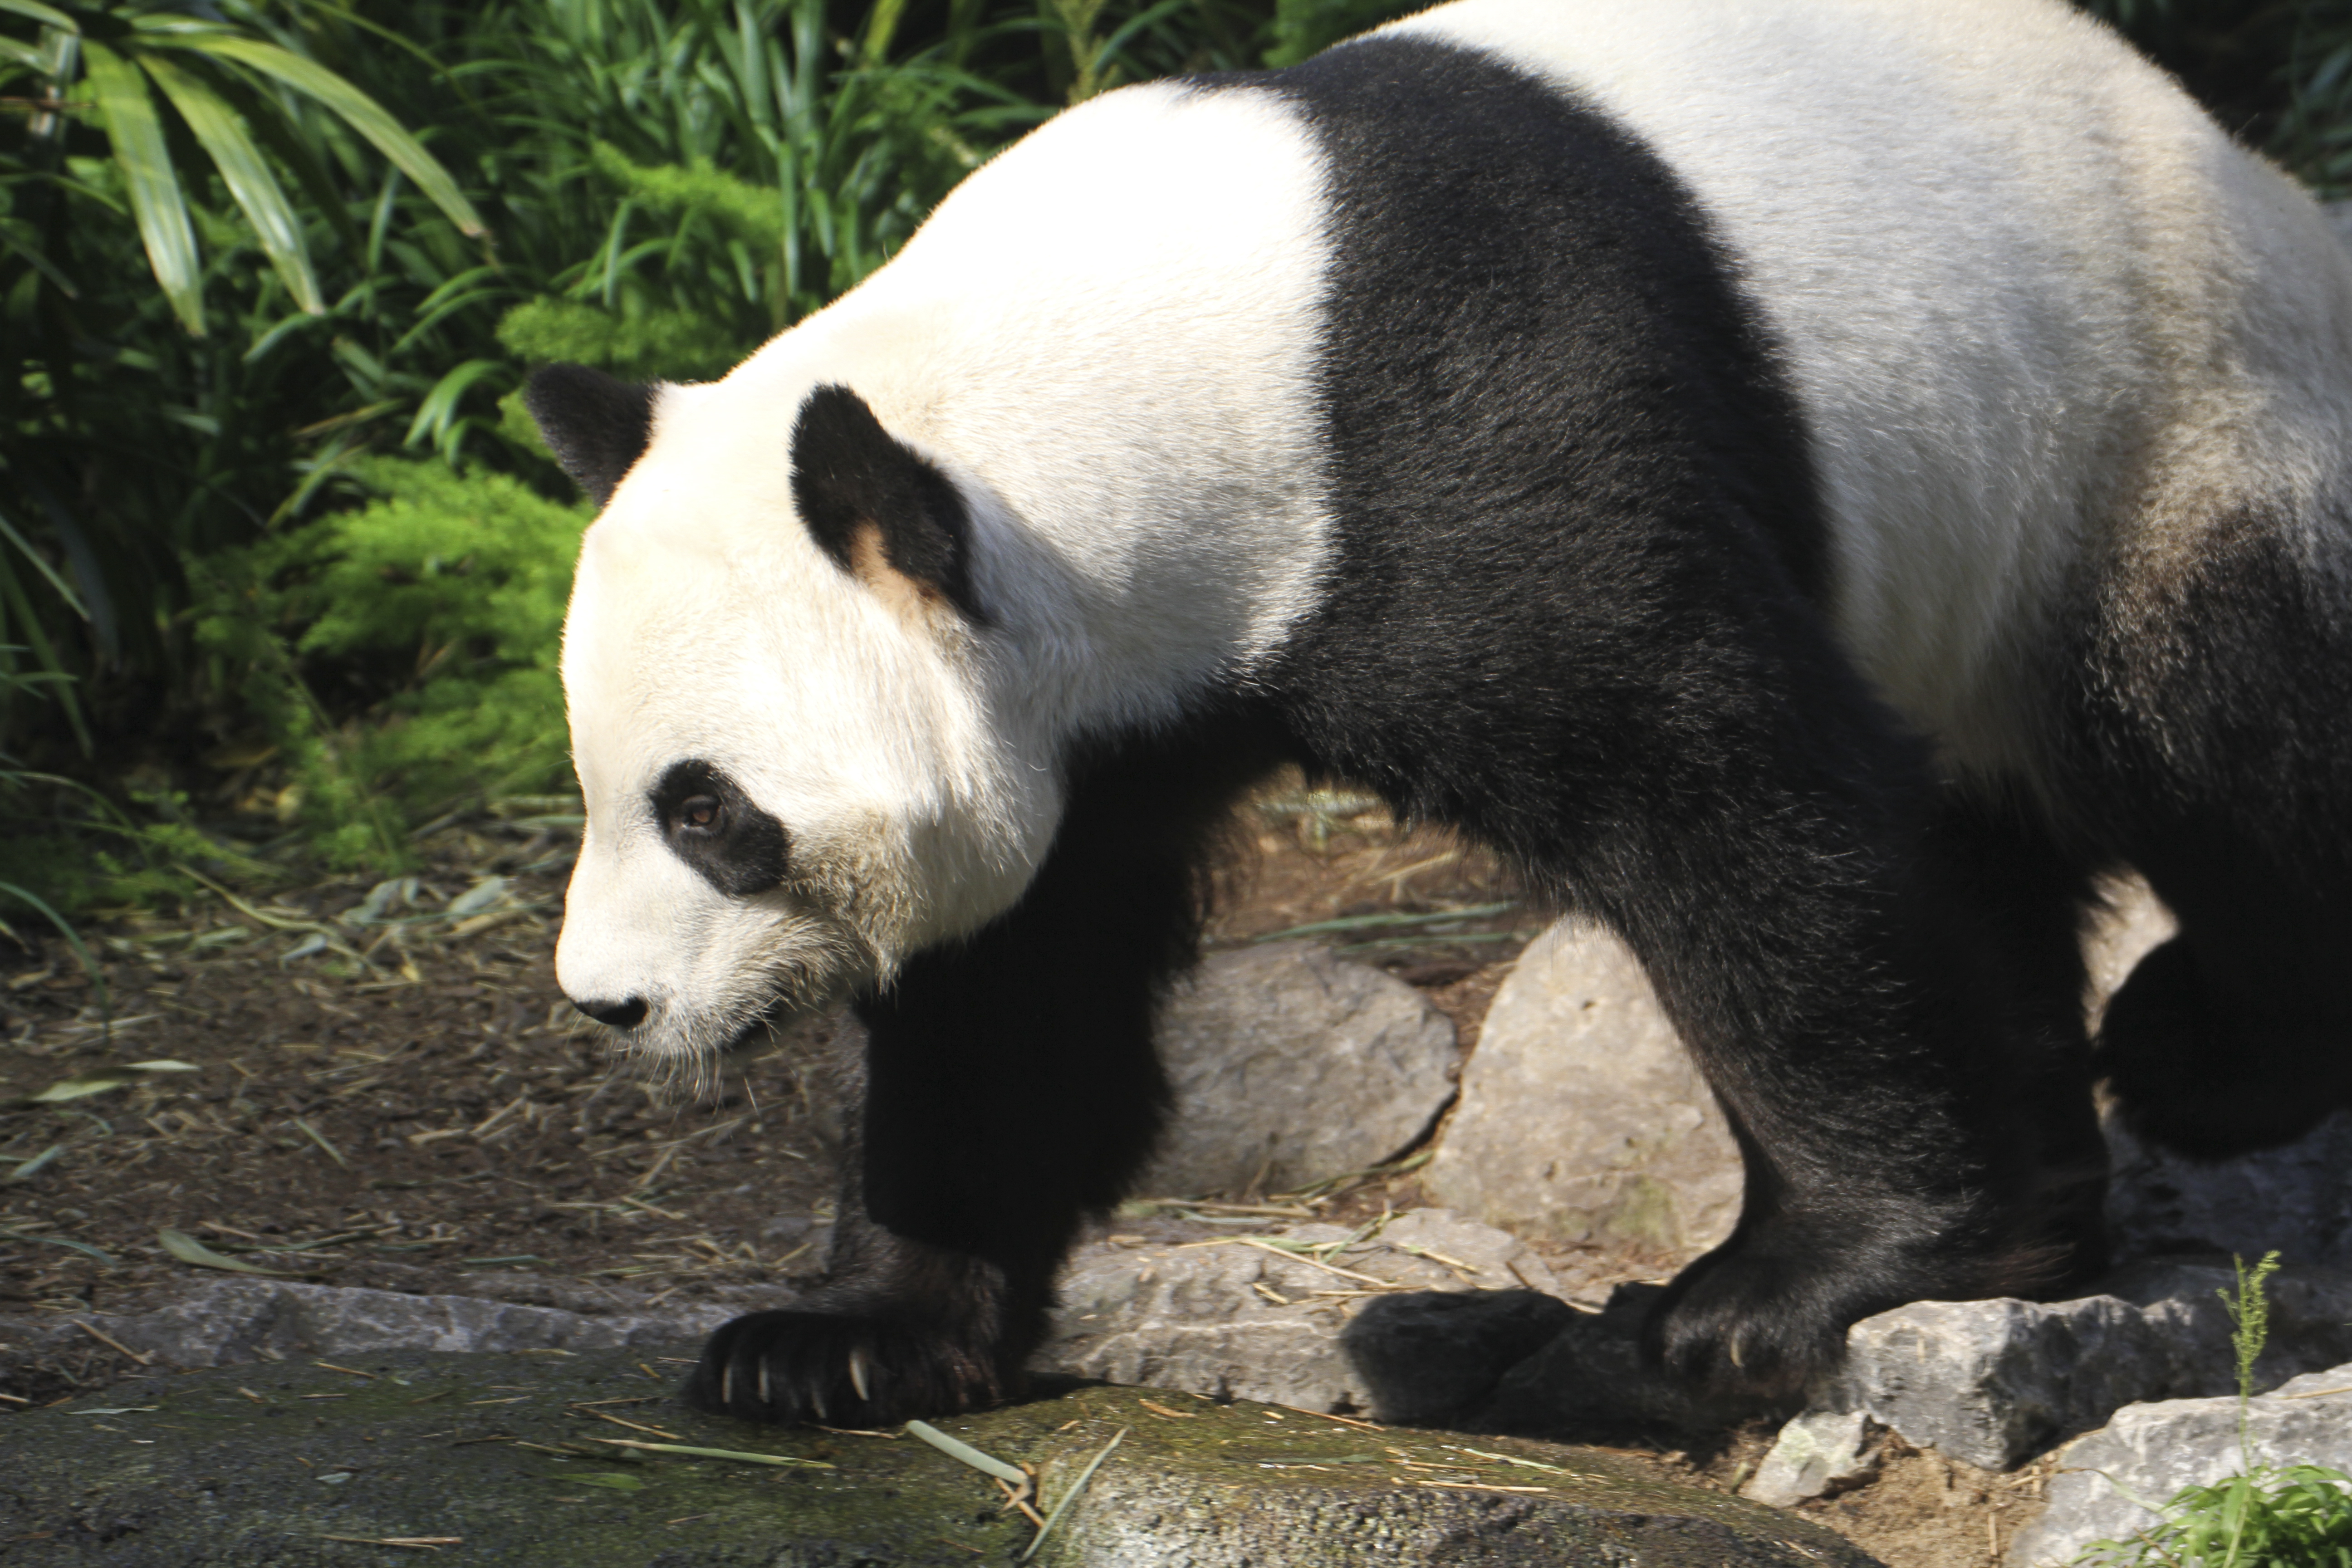 Egy kanadai állatkert visszaküld két óriáspandát Kínába, mert a világjárvány miatt nincs elég bambuszuk